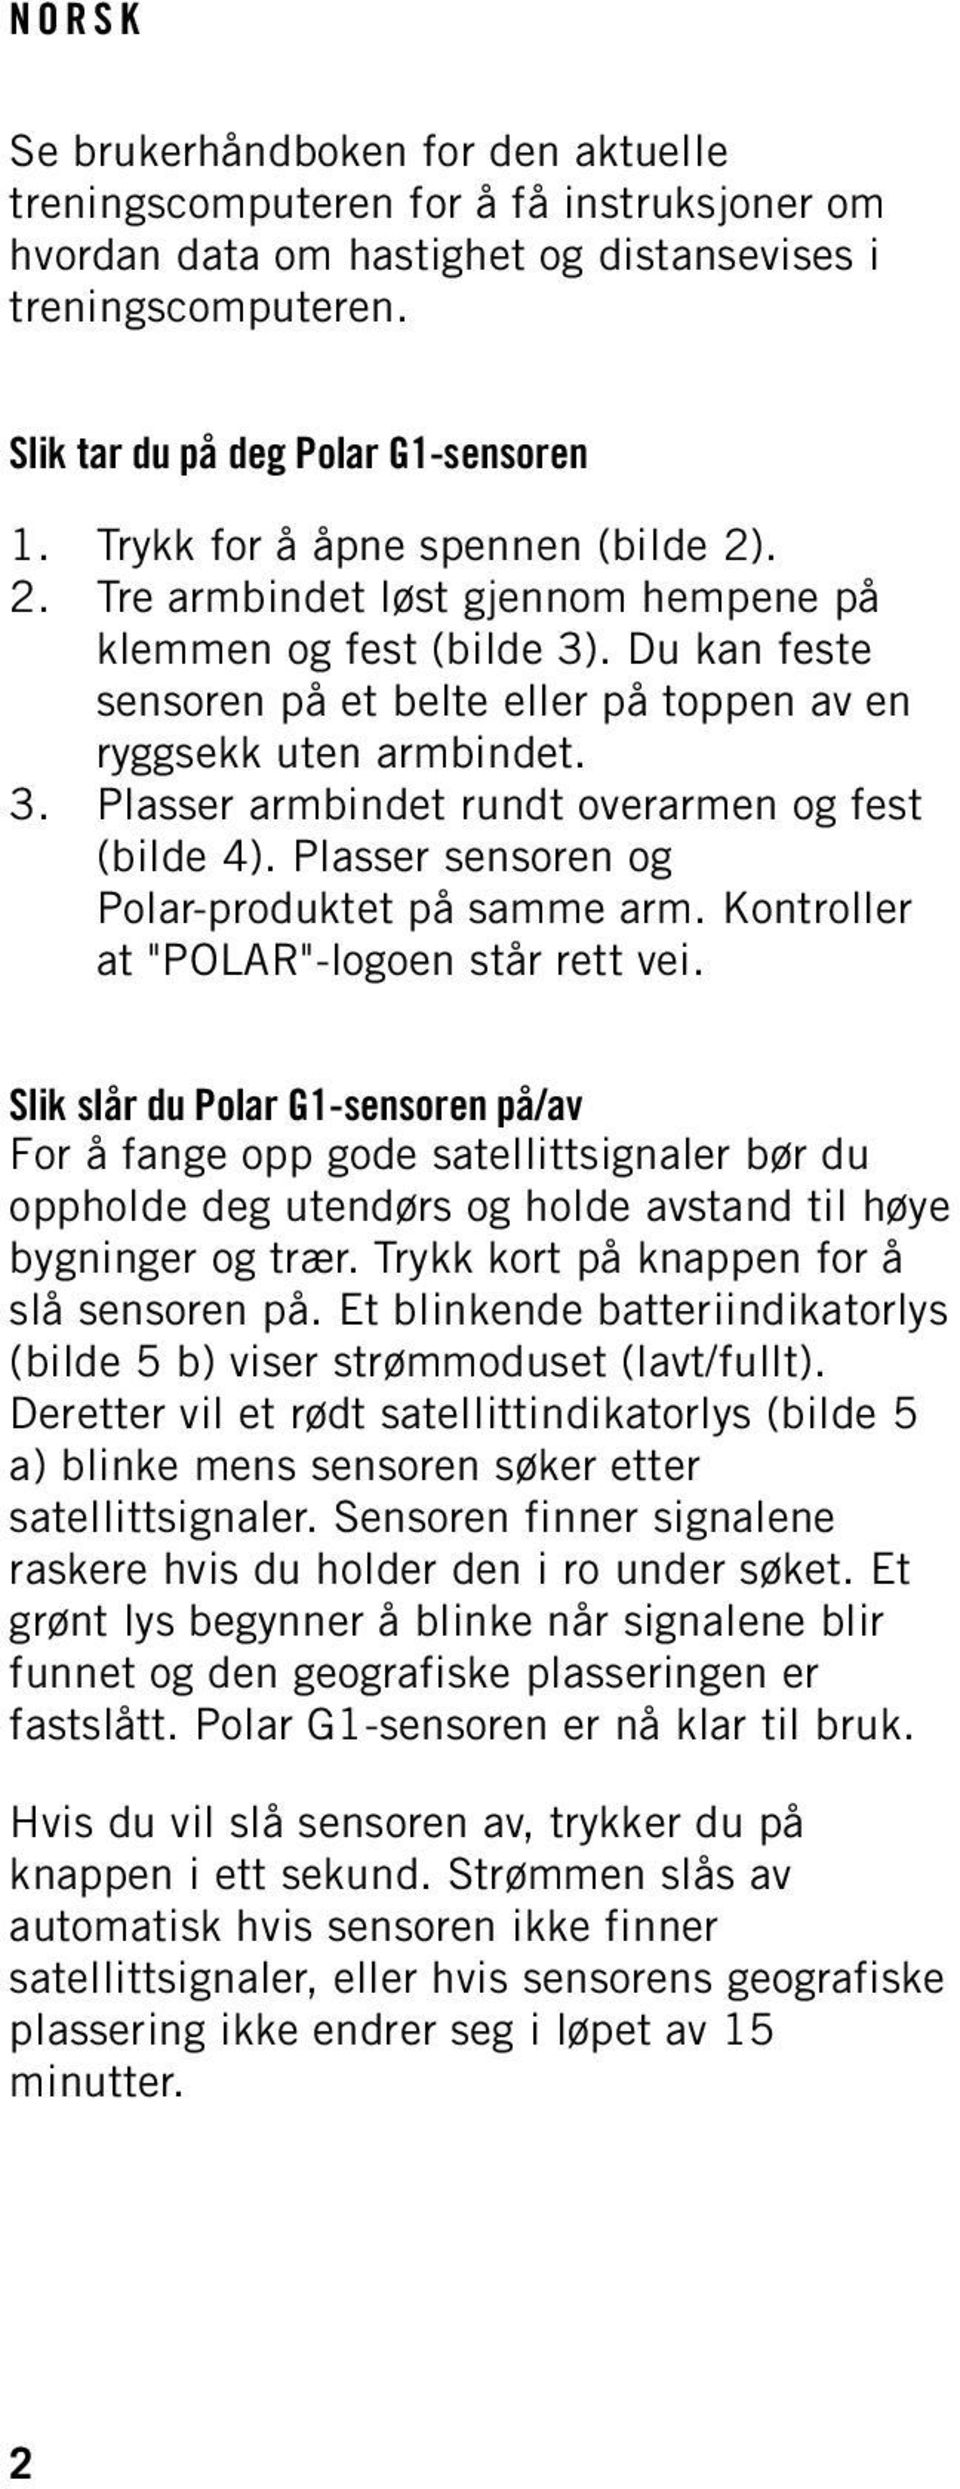 Plasser sensoren og Polar-produktet på samme arm. Kontroller at "POLAR"-logoen står rett vei.